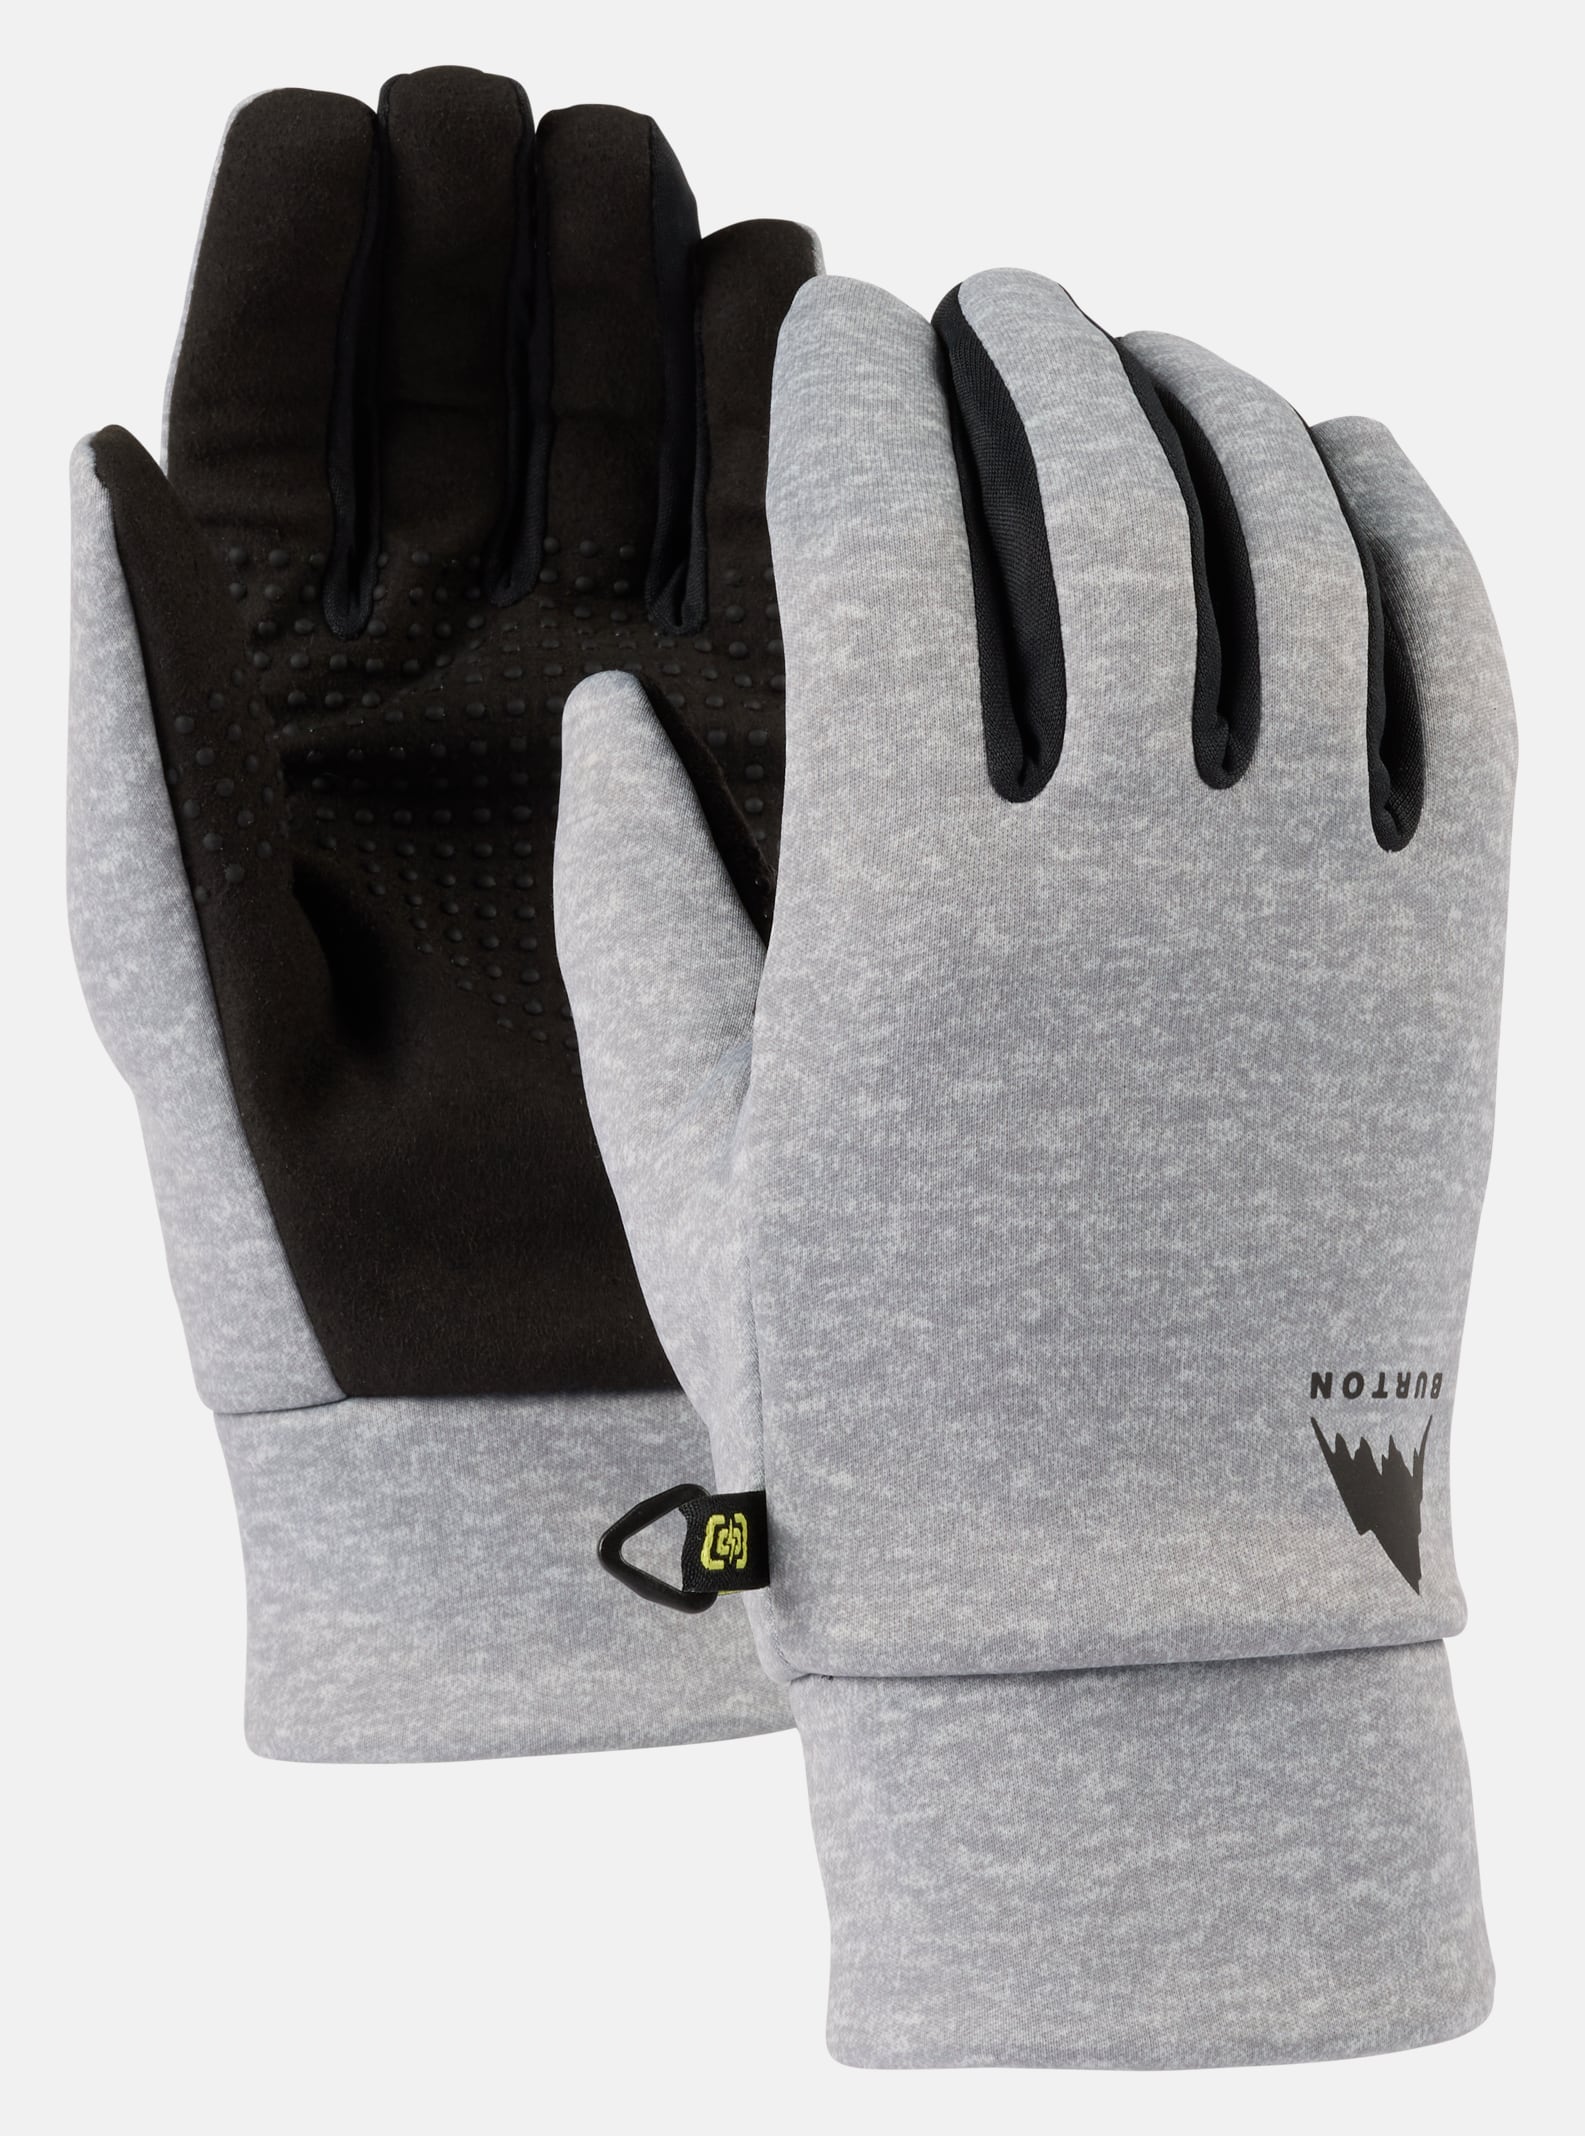 Women's Gloves | Women's Mittens | Burton Snowboards ES